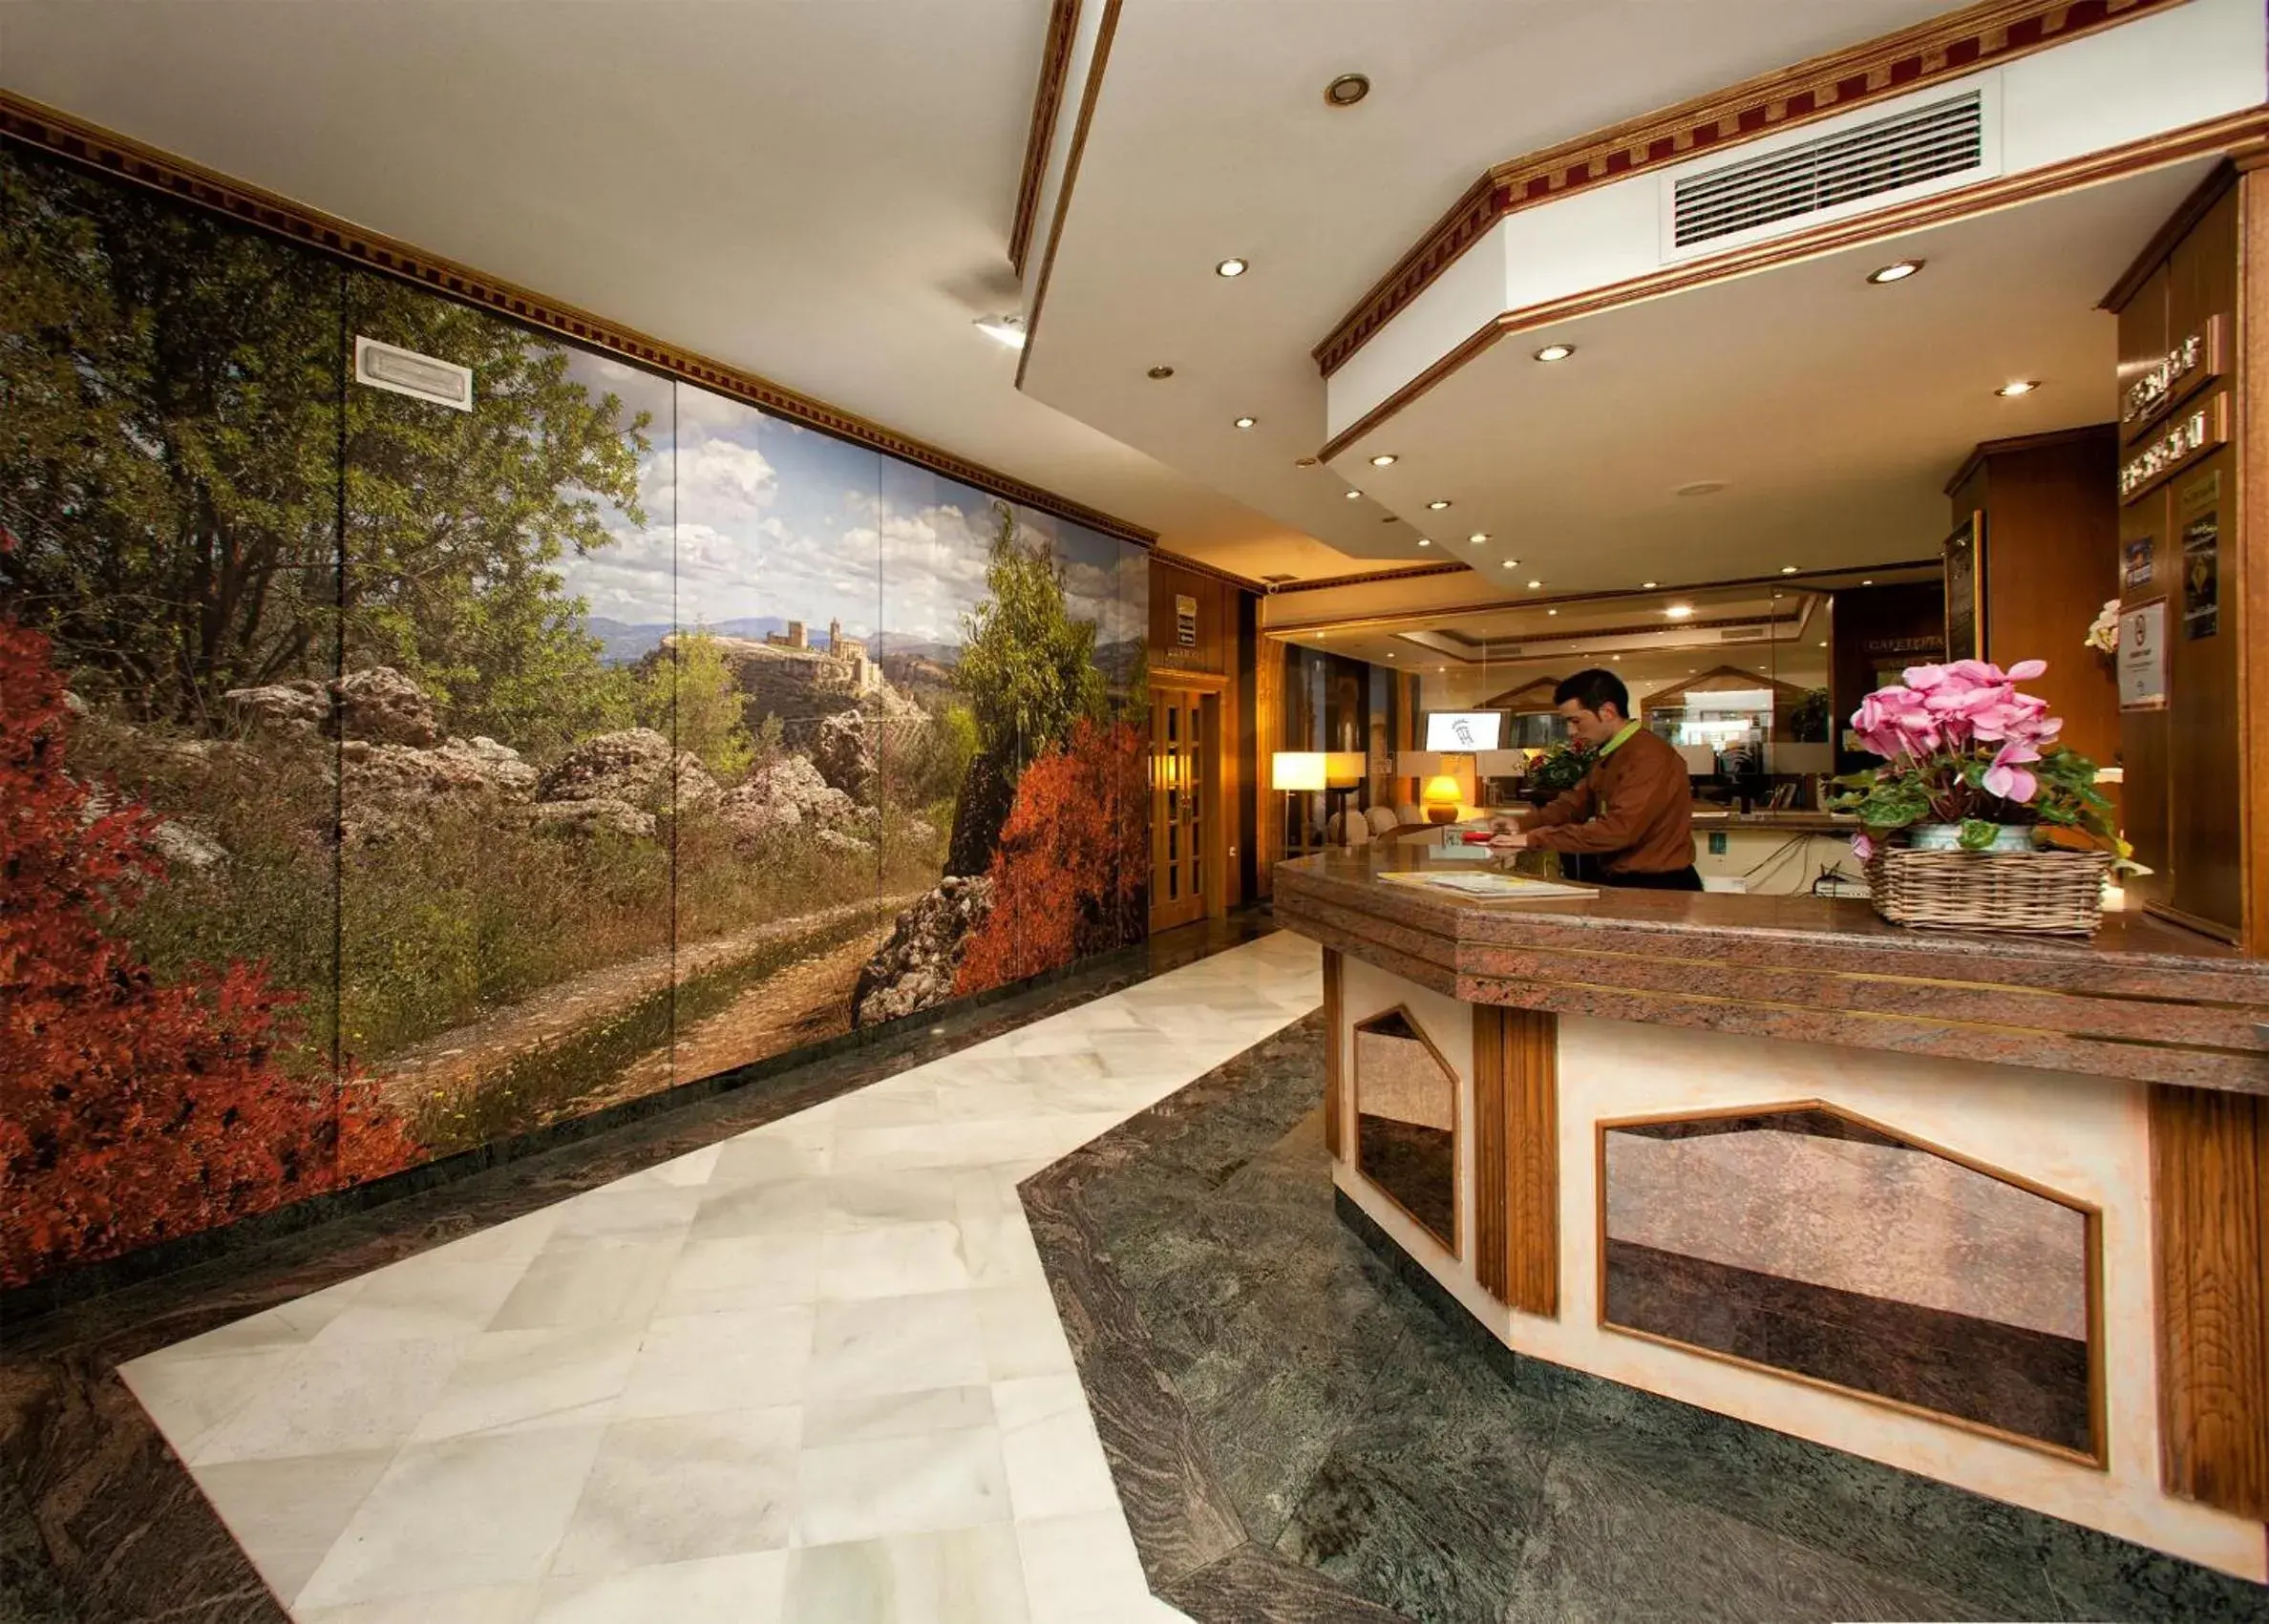 Lobby or reception, Lobby/Reception in Hotel Torrepalma